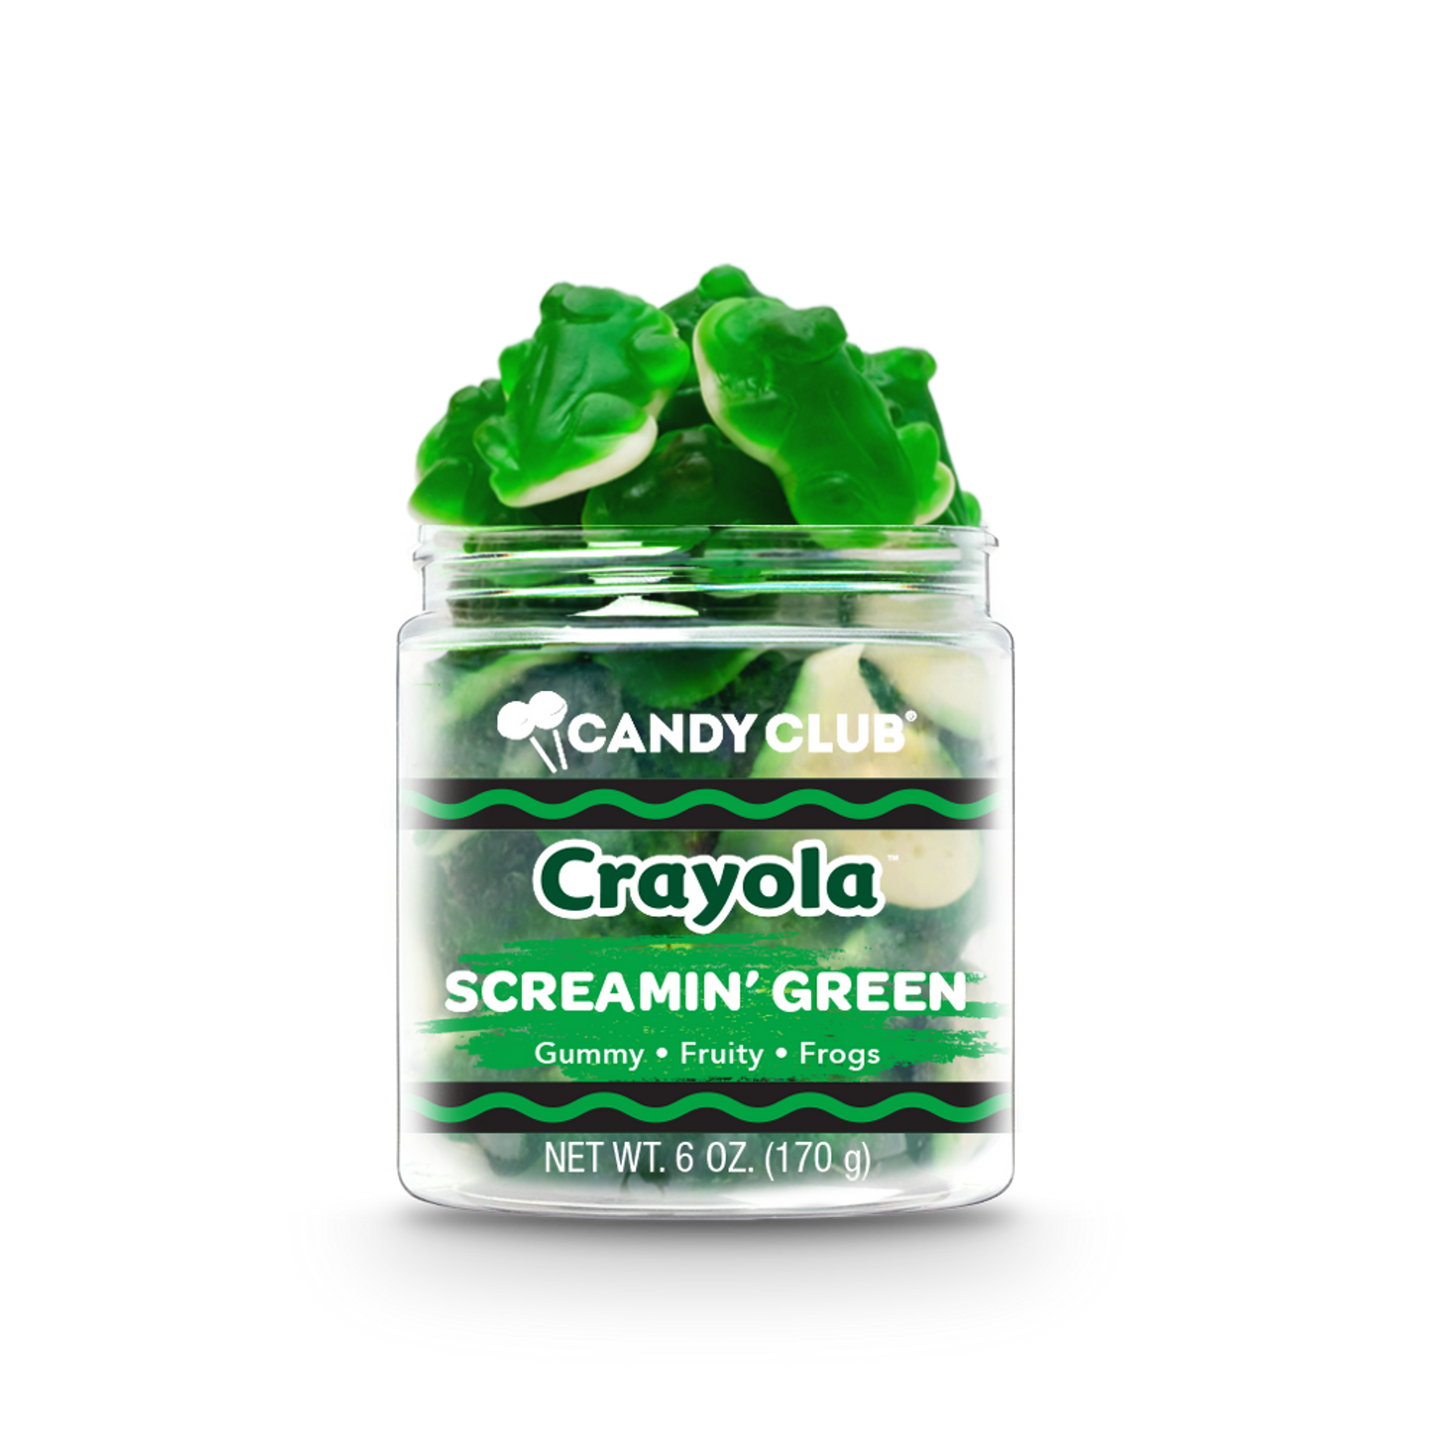 Screamin Green Crayola - Candy Club Gourmet Candy